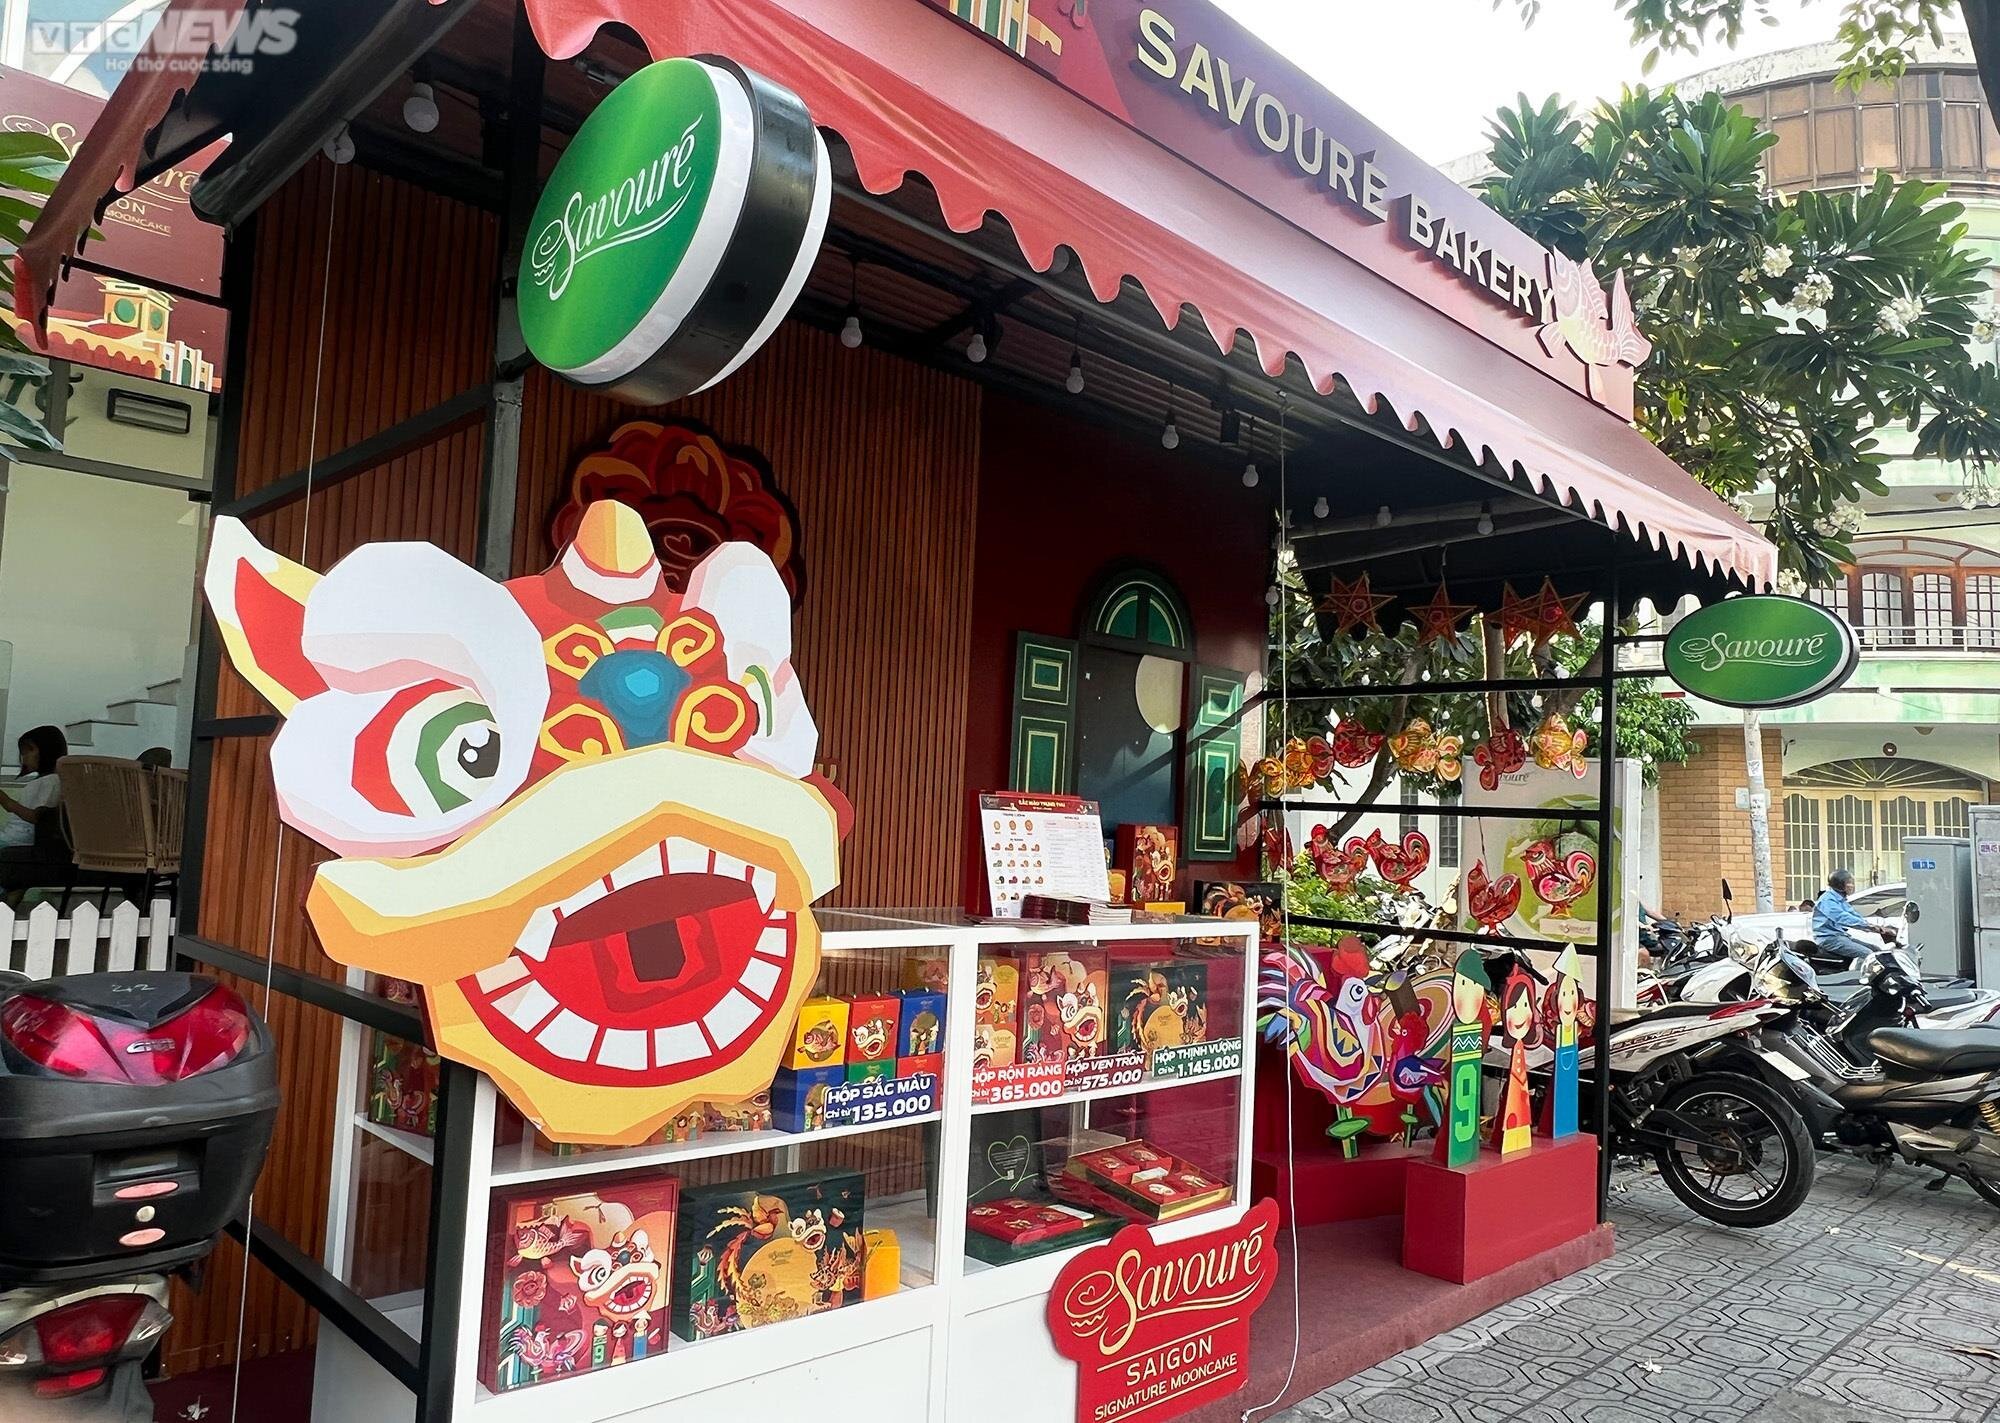 Quầy bánh trung thu của thương hiệu Savoure, trên đường Trần Nhật Duật, quận 1, TP.HCM. (Ảnh: Hoàng Thọ)